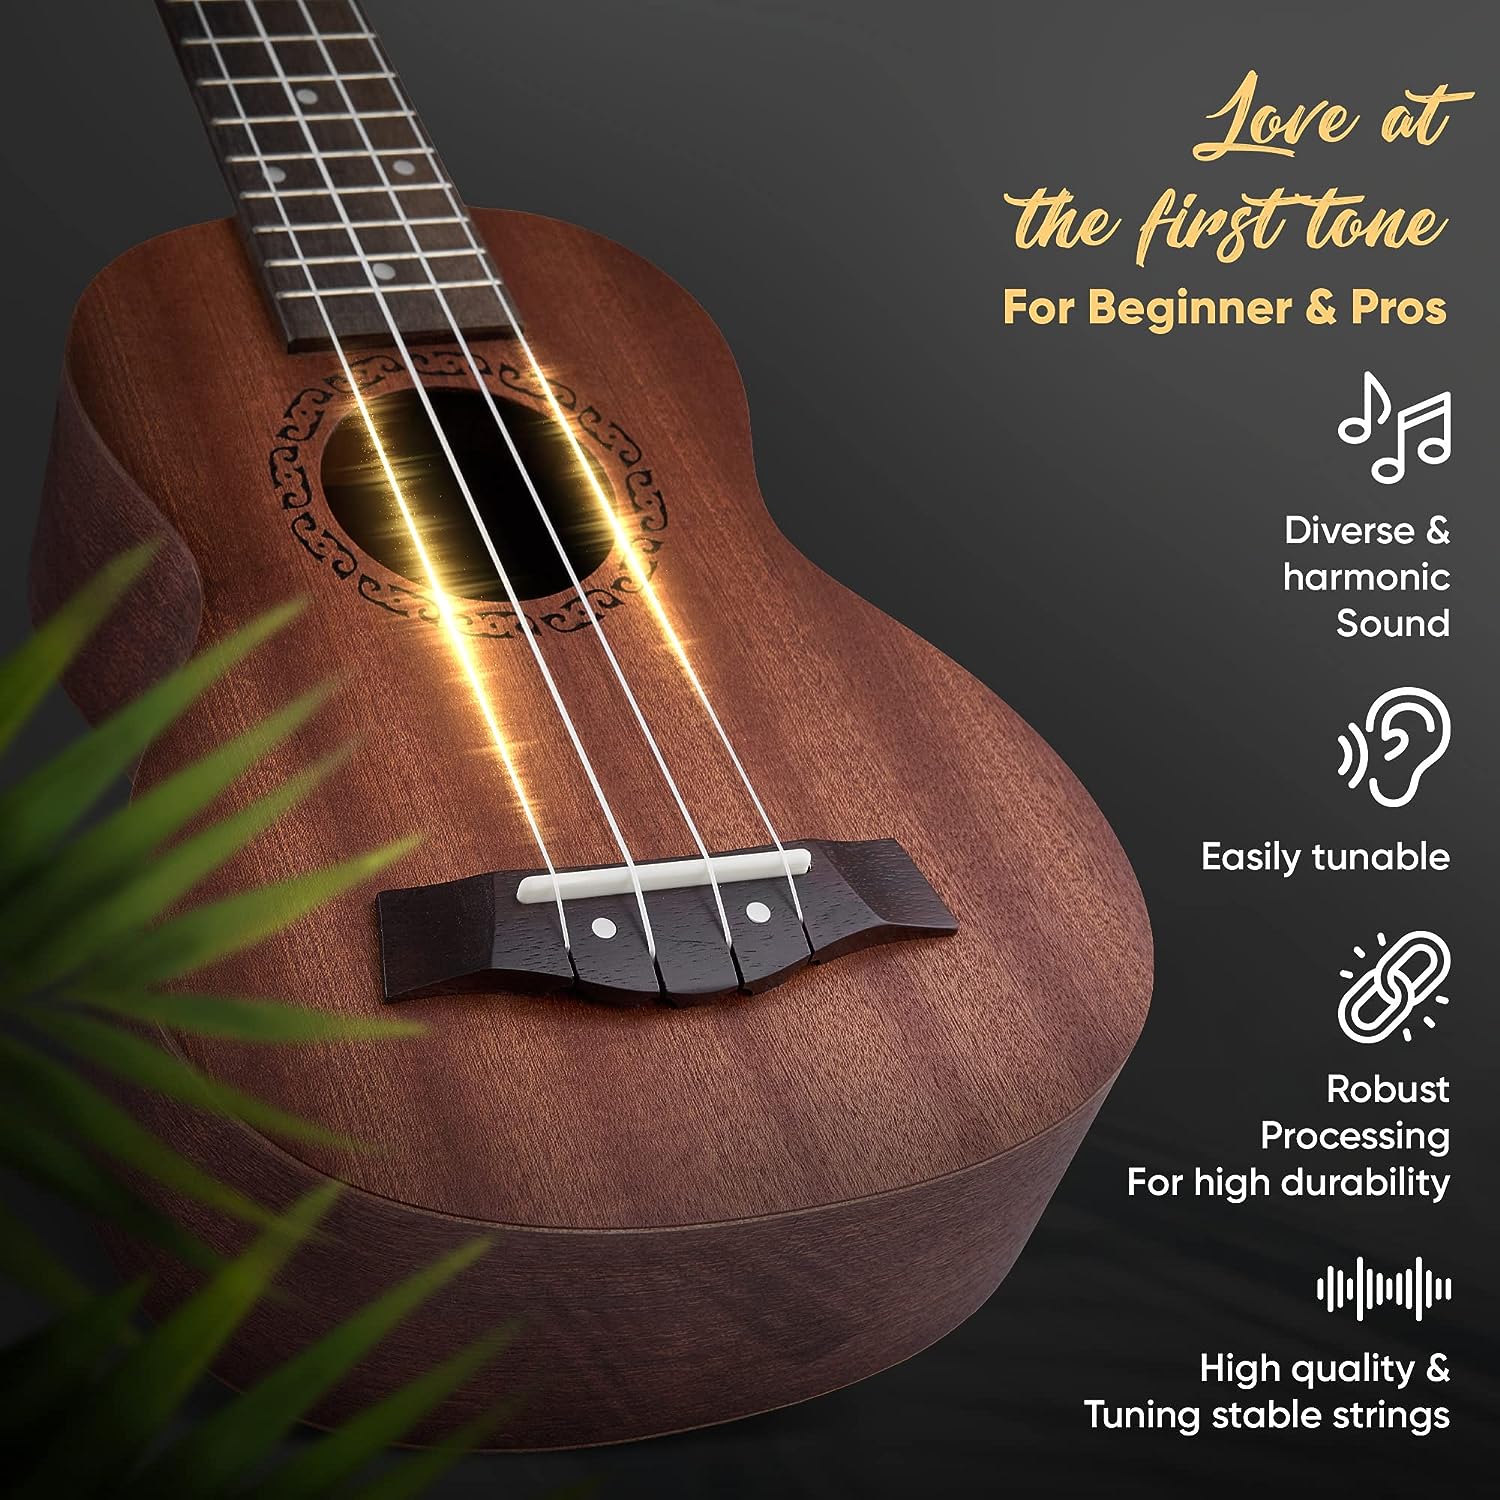 HAVENDI® Soprano Ukulele 21 Inch Premium Hawaii Guitar Aquila Strings Mahagoni Wood incl. Travel Bag for Beginner and Professionals